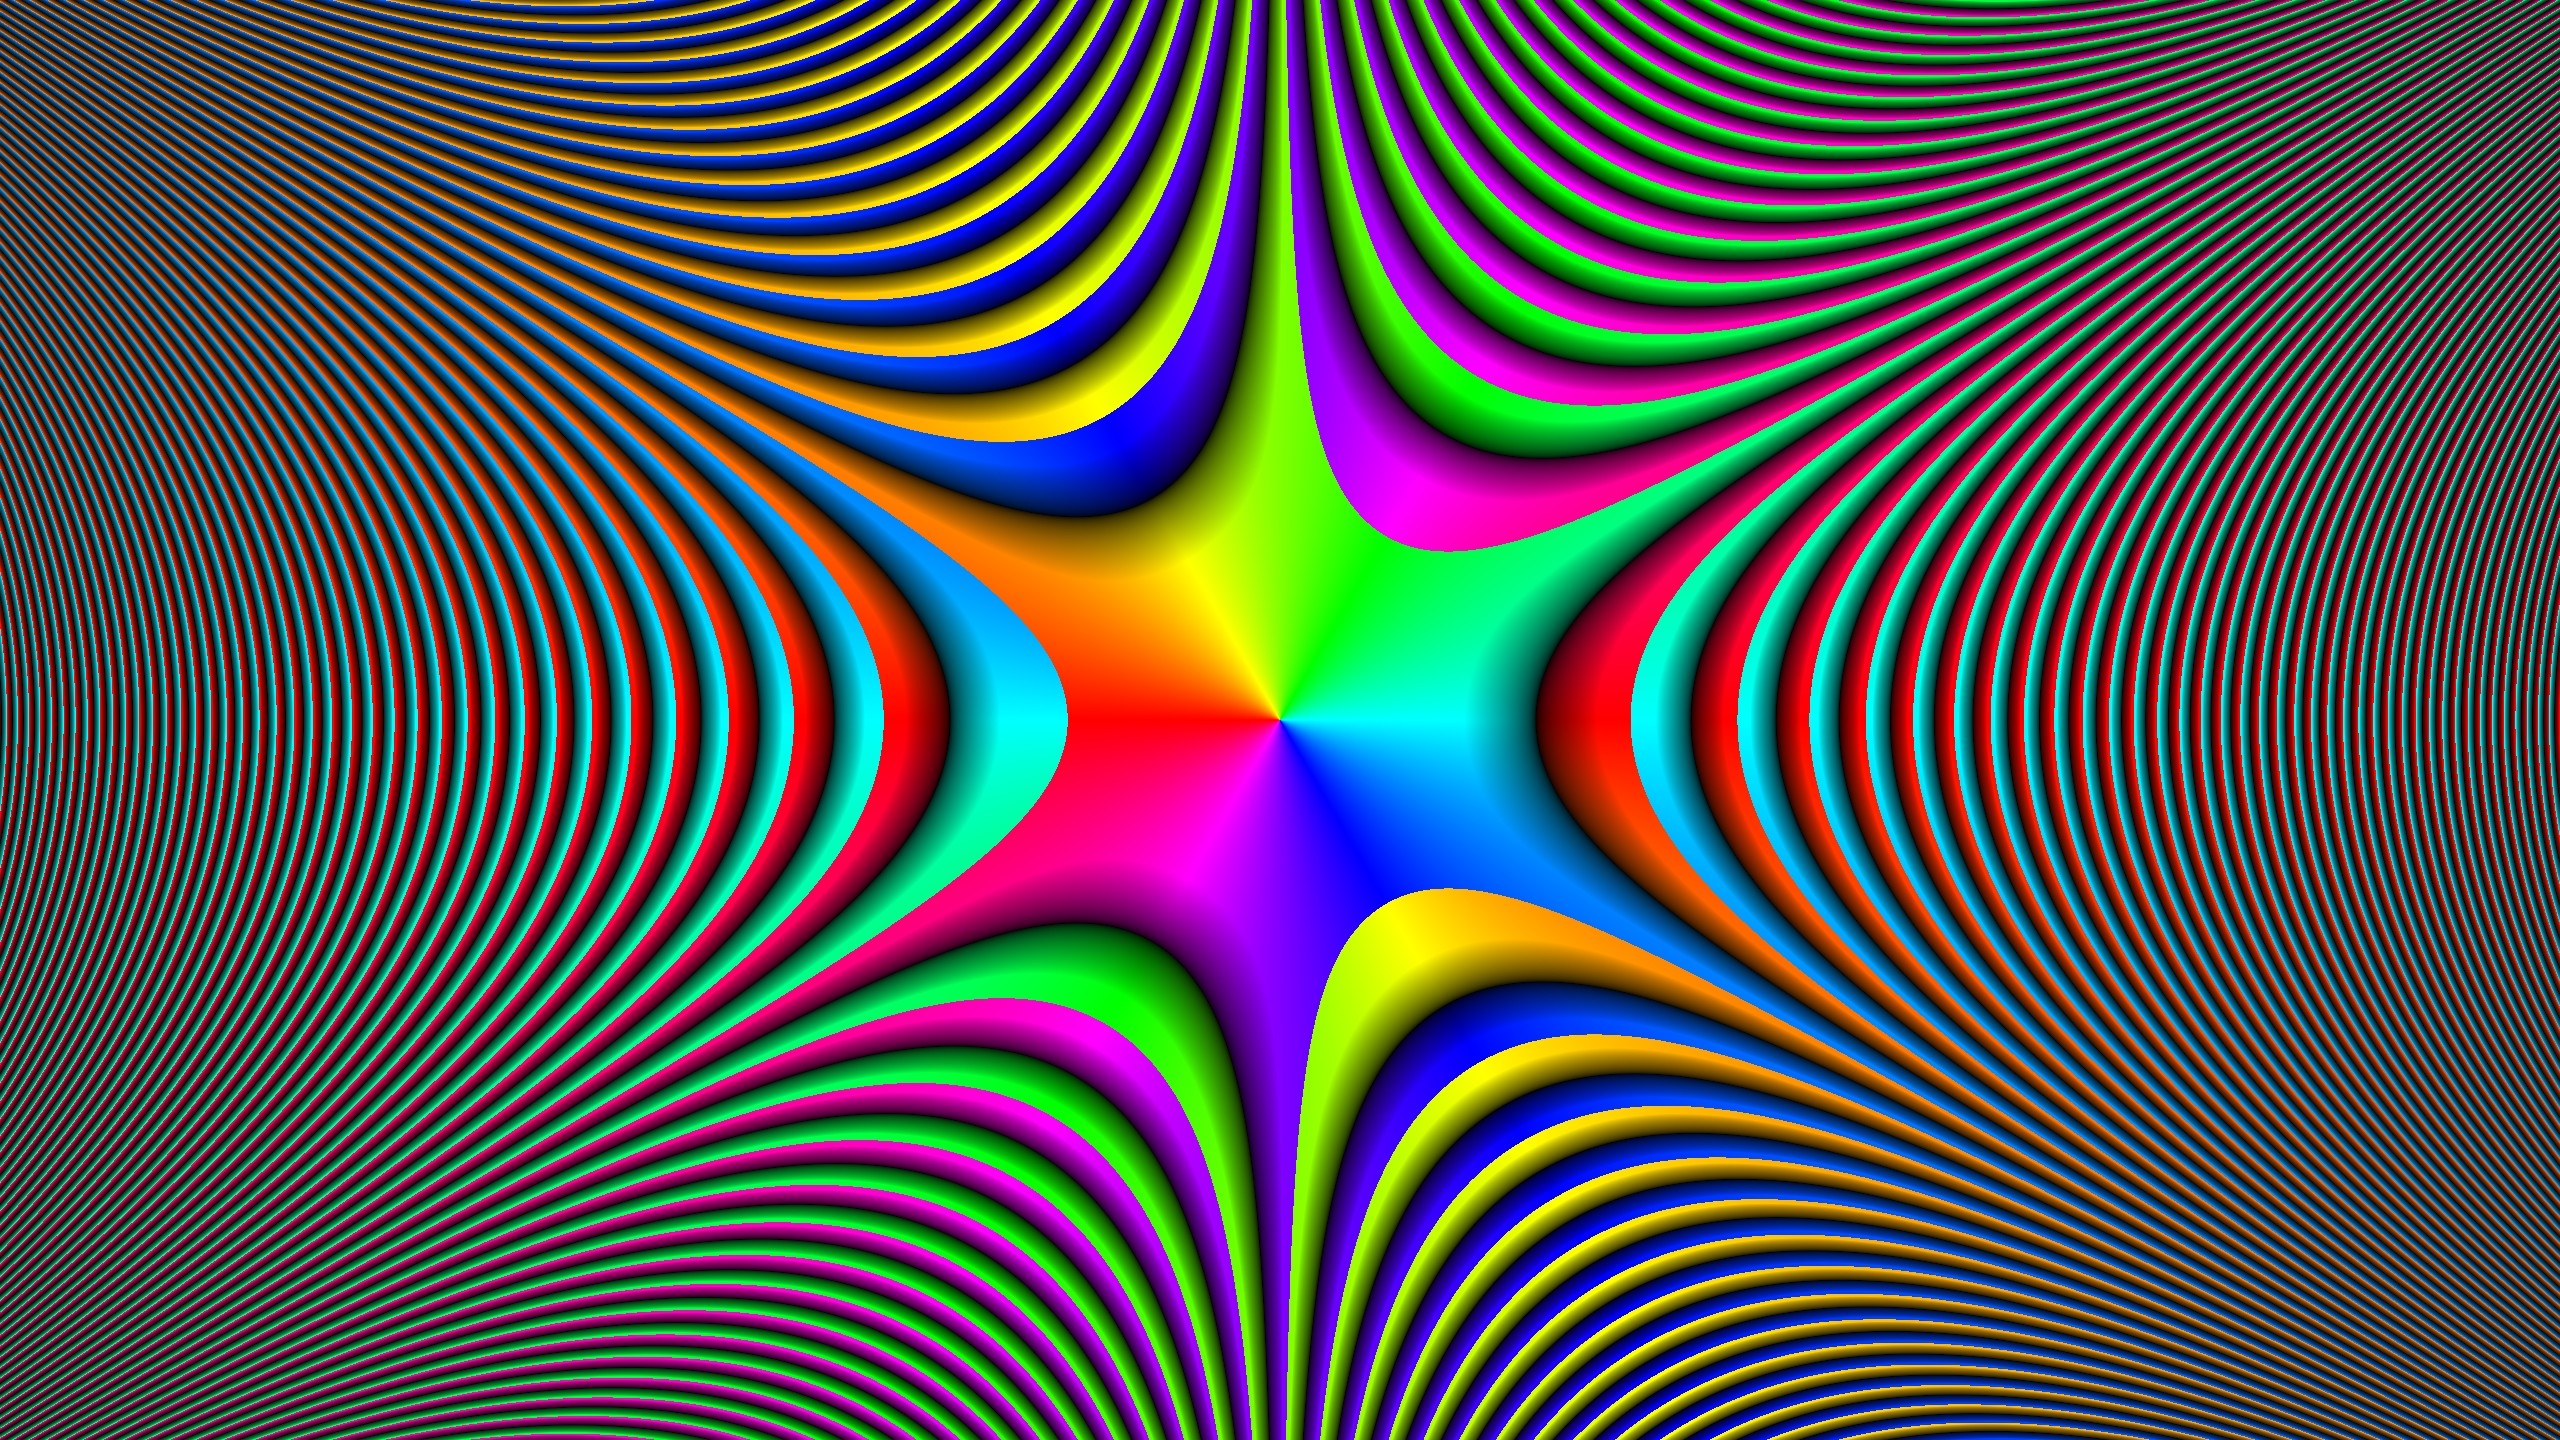 2560x1440 Colorful-Illusion-Wallpaper